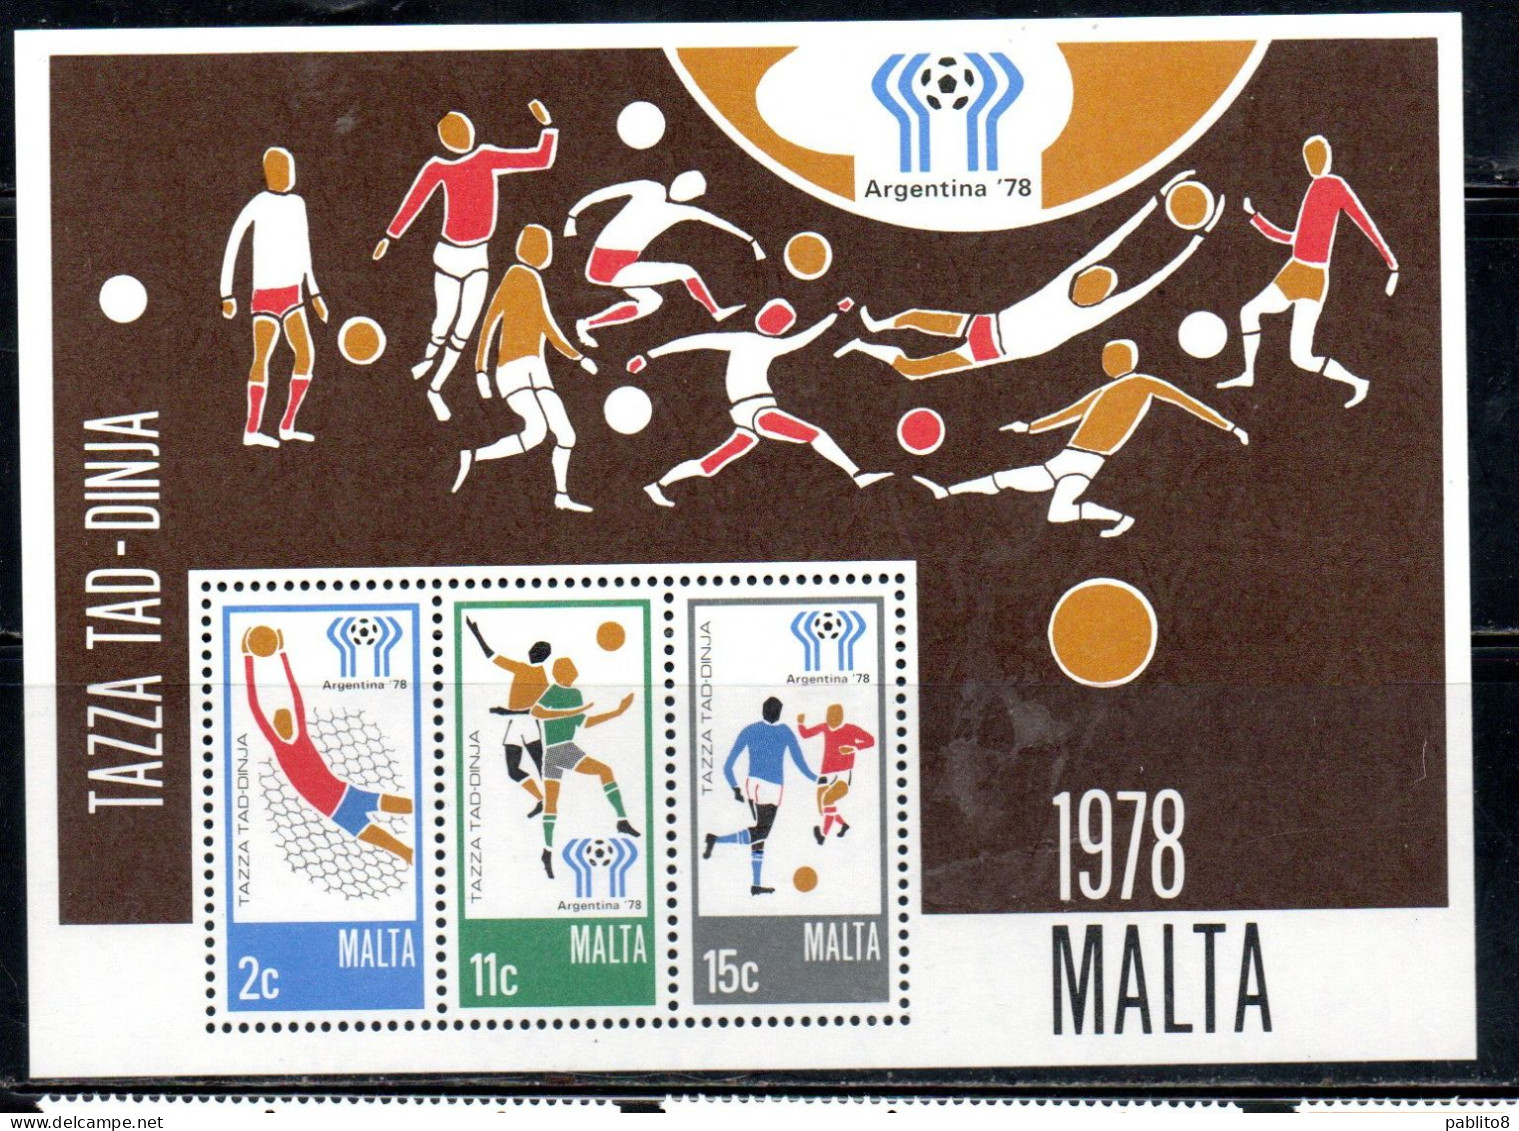 MALTA 1978 WORLD CUP SOCCER CHAMPIONSHIP CAMPIONATO MONDIALE DI CALCIO ARGENTINA BLOCK SHEET MNH - Malte